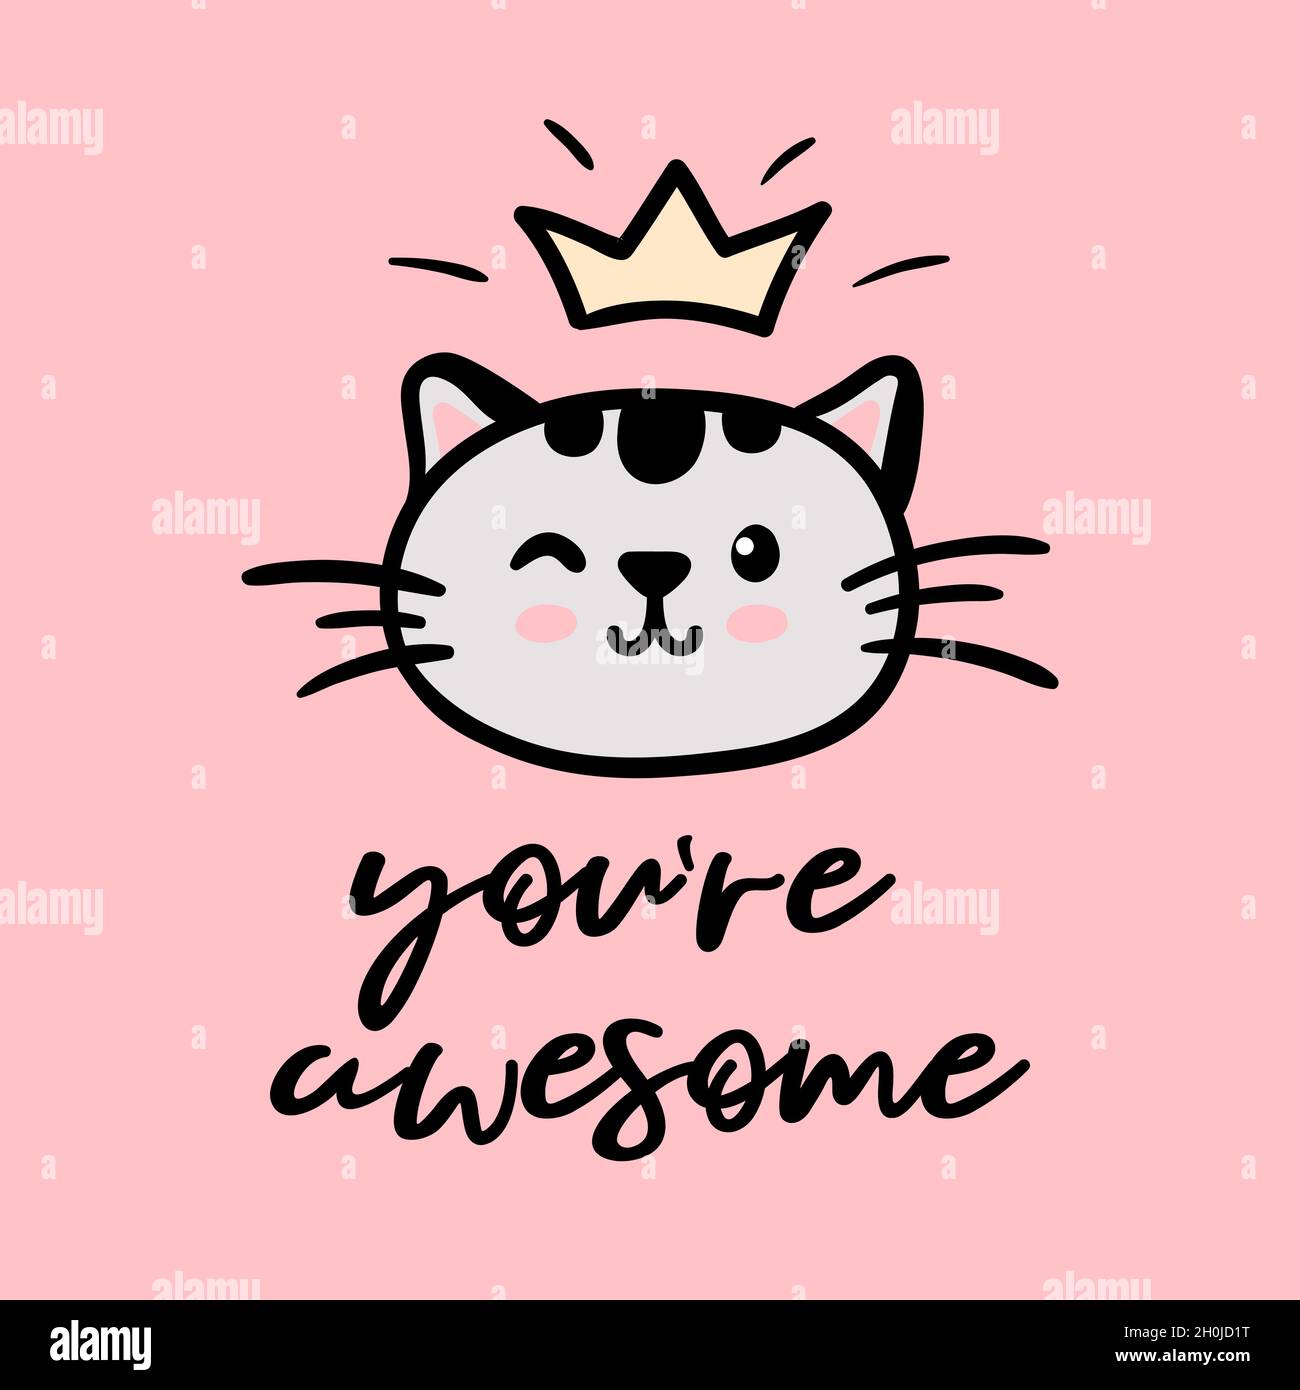 Katze niedliches Gesicht mit Krone Vektor Doodle Illustration isoliert auf rosa Hintergrund mit inspirierenden Schriftzug Sie sind genial. Kinder Babykrippe Pastell Poster, Grußkarte Stock Vektor